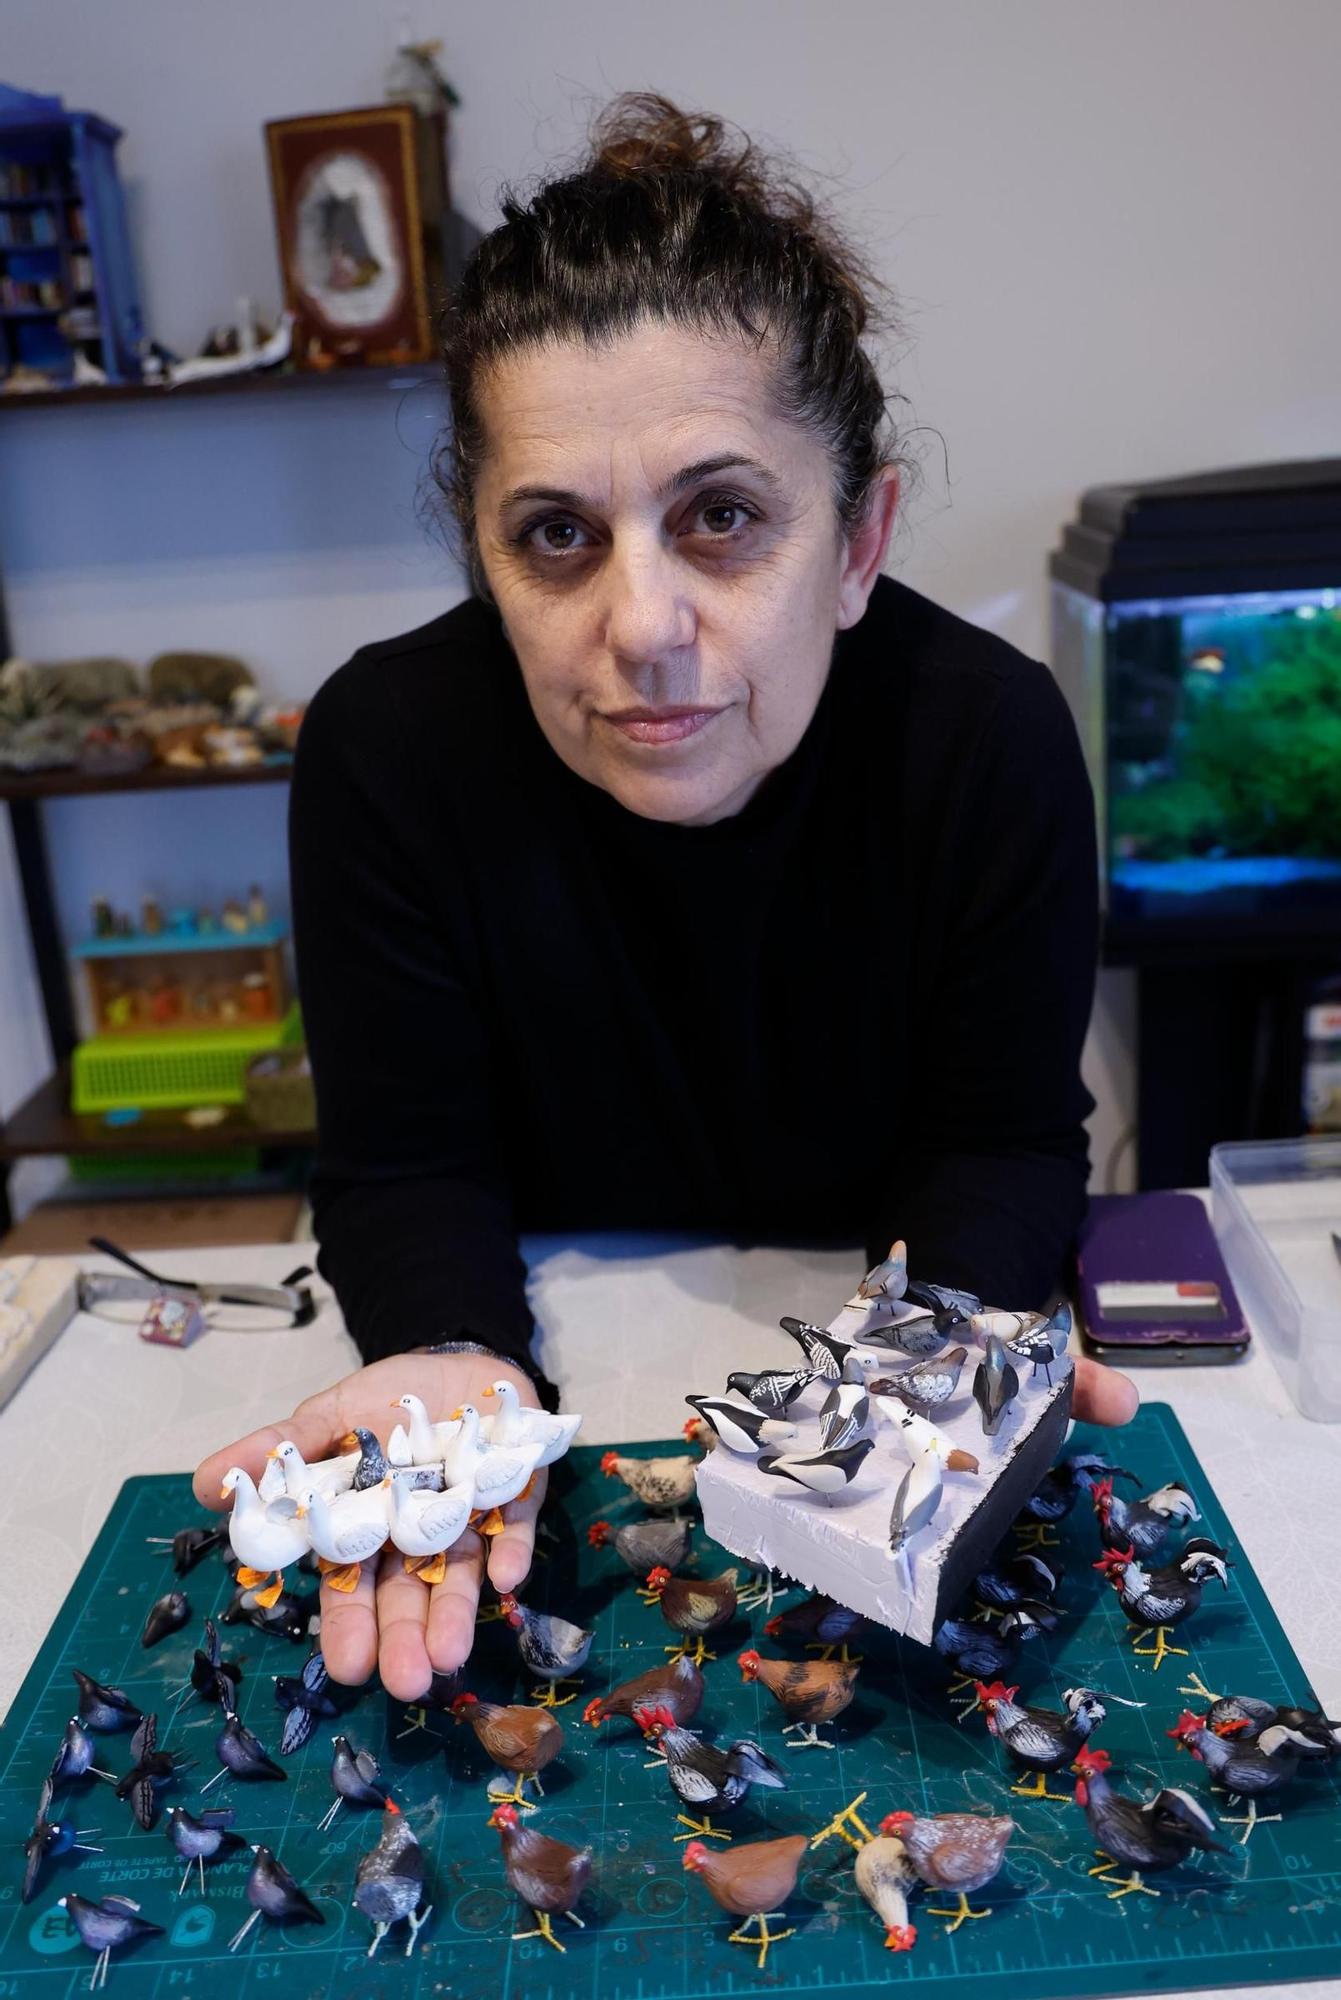 Lupe Soto elabora animales, frutas o libros en miniatura, personalizados y perfectamente legibles, desde recetarios de cocina a la colección de Harry Potter